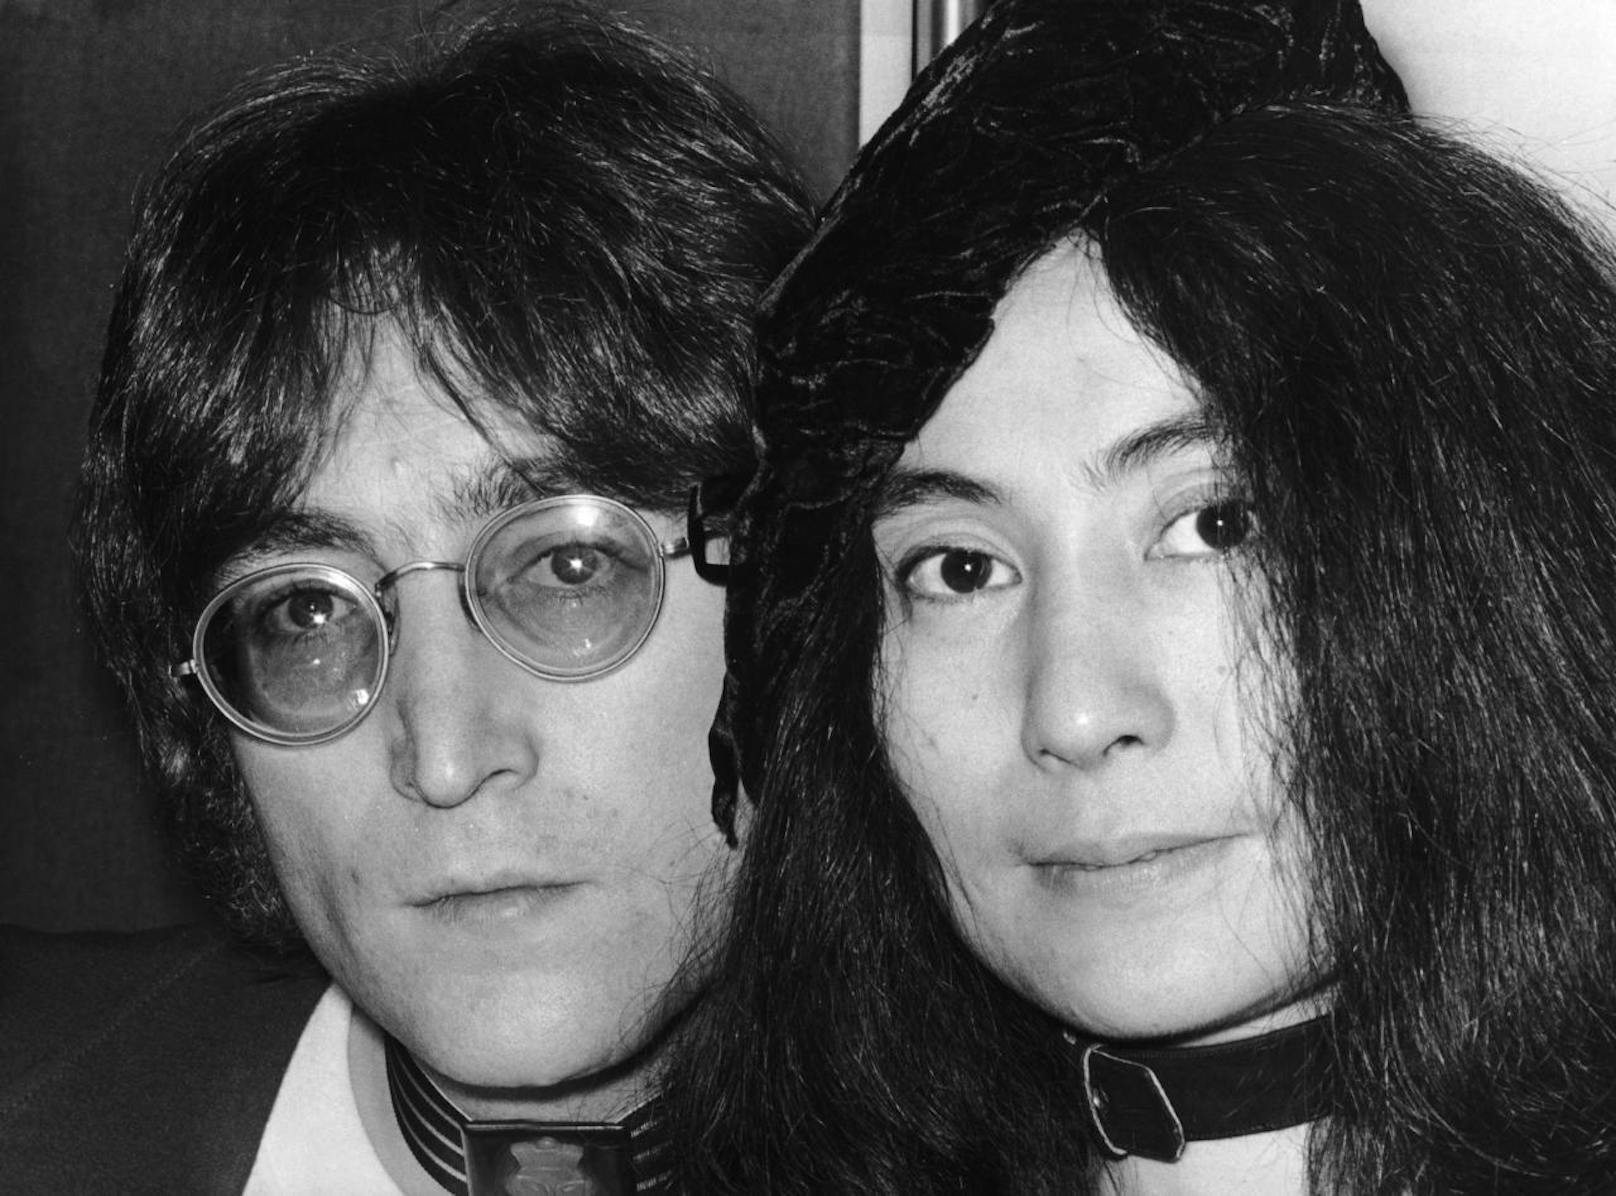 Hier wohnte kein Geringerer als John Lennon, Mitglied der Beatles. Hier im Bild mit Yoko Ono.